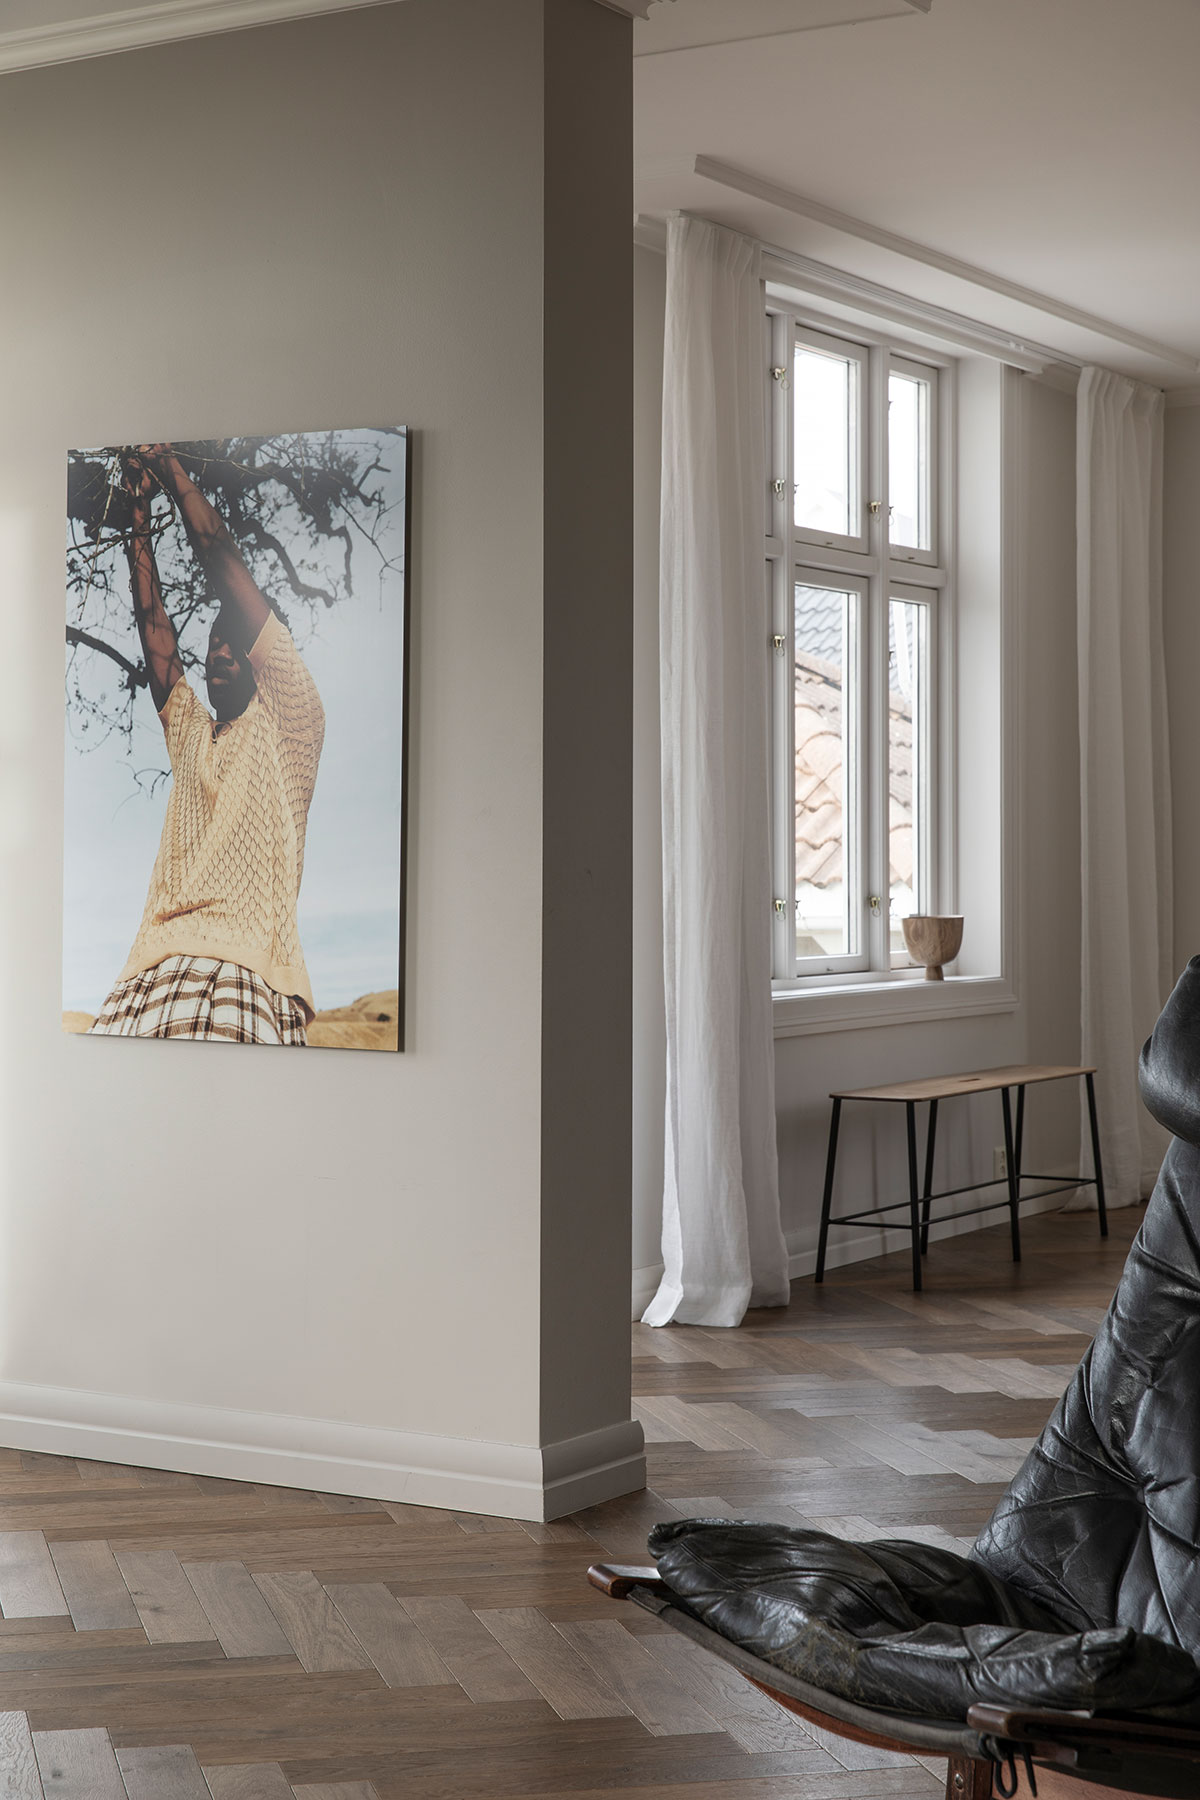 Спокойный и элегантный современный интерьер дома дизайнера одежды в Осло